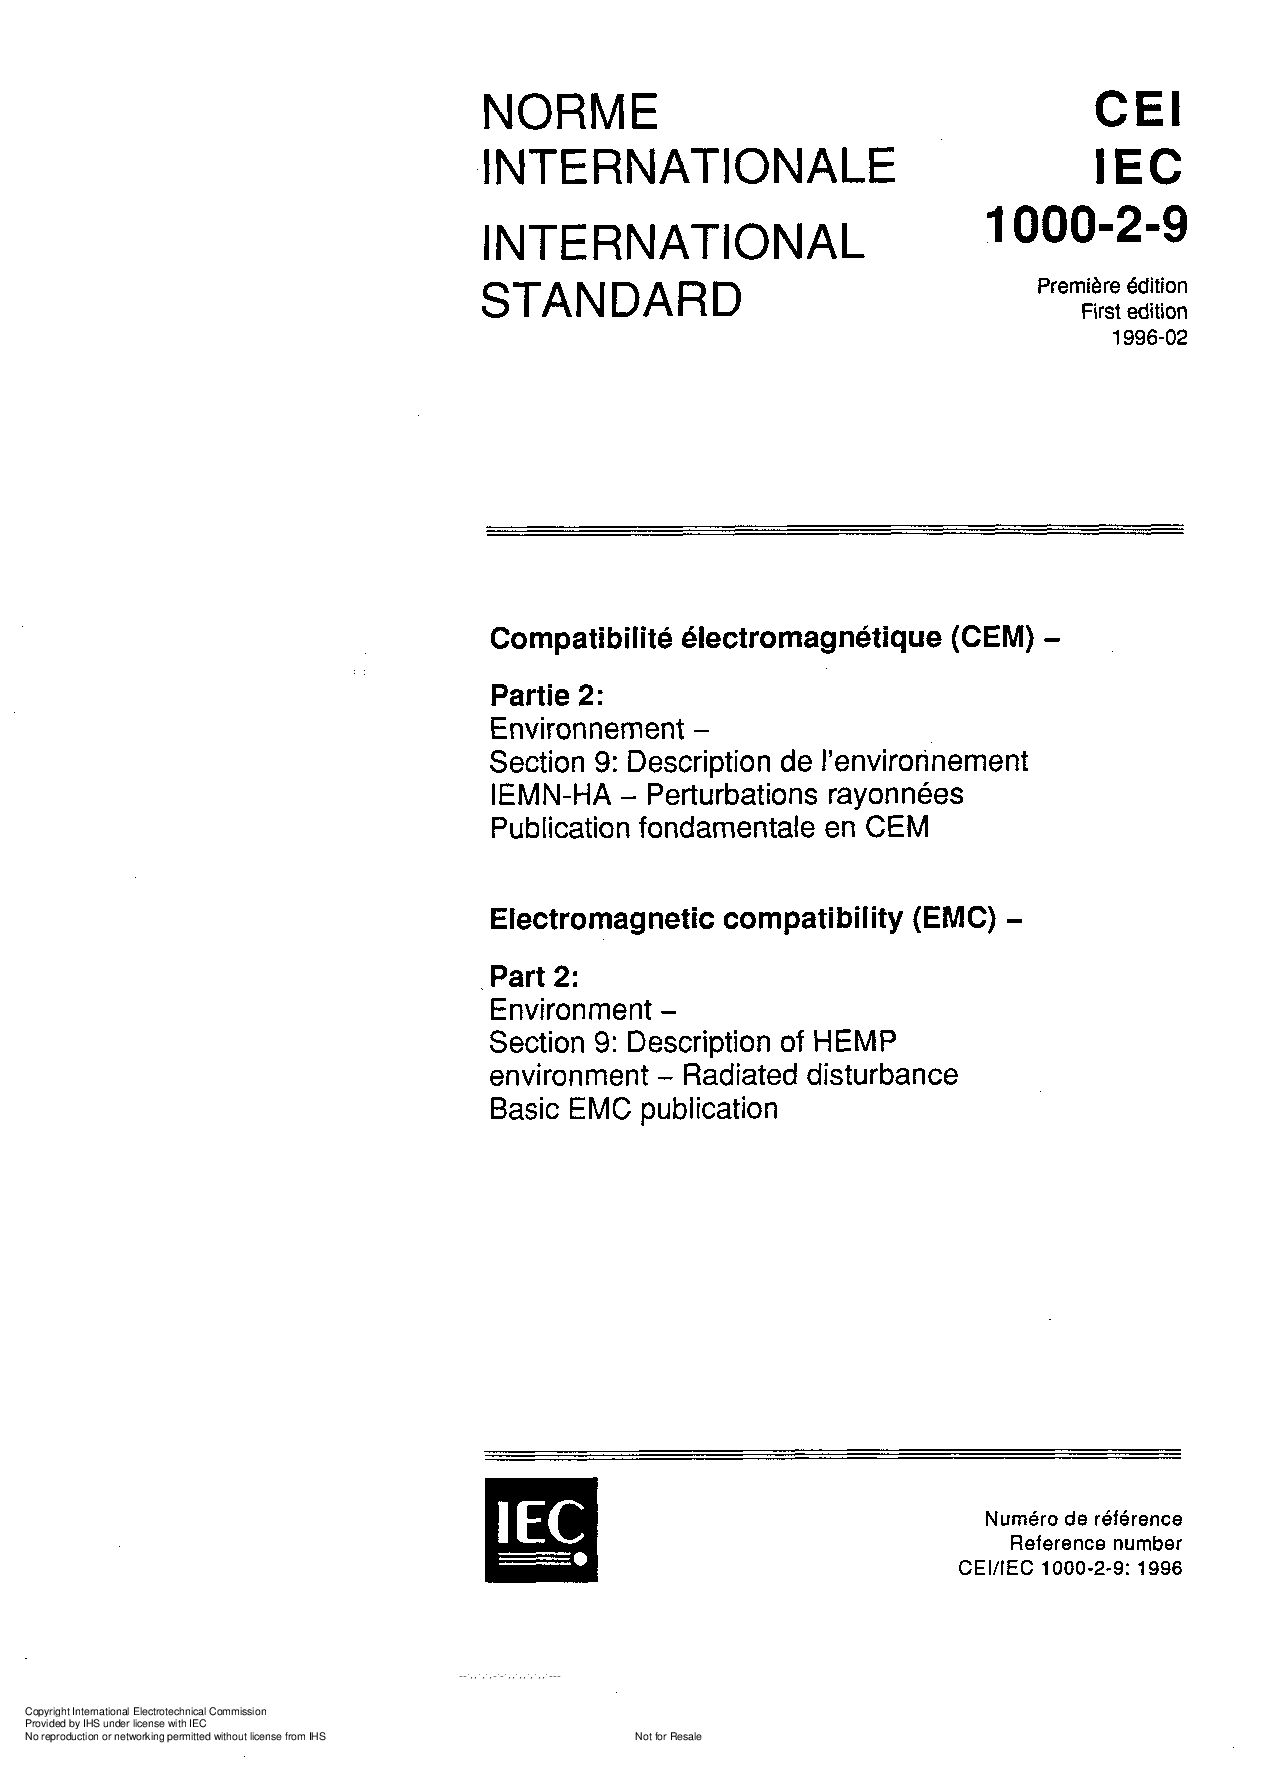 IEC 61000-2-9:1996